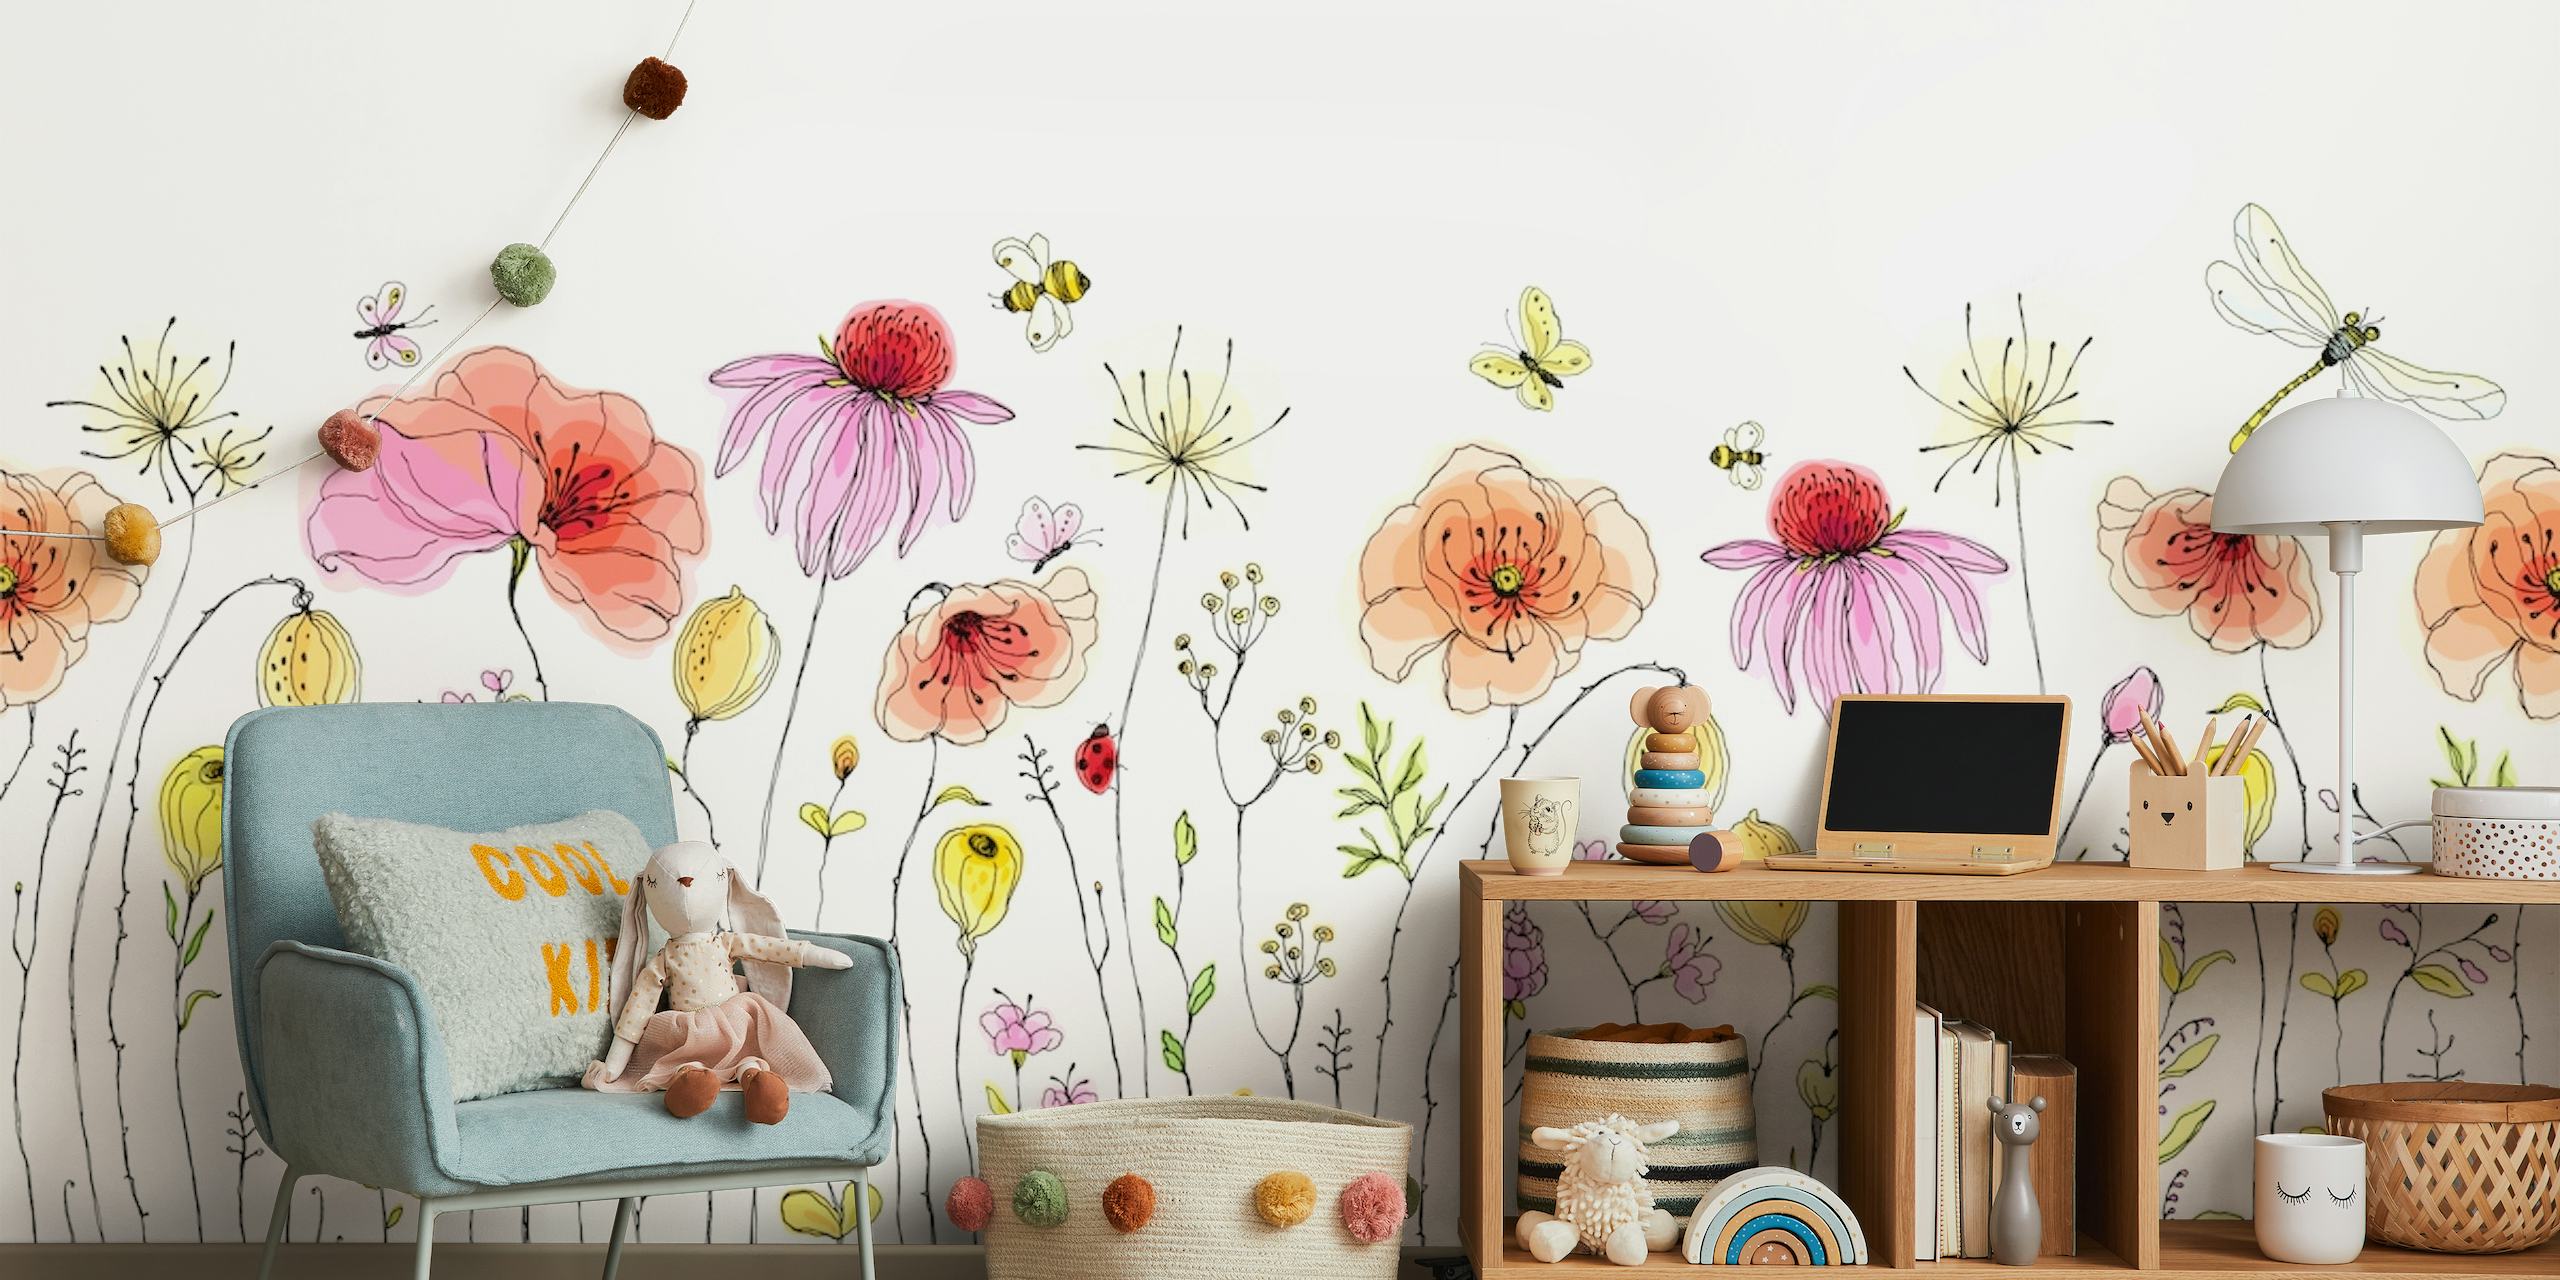 Elegante mural de pared de campo de flores de verano con flores de colores pastel y una caprichosa libélula